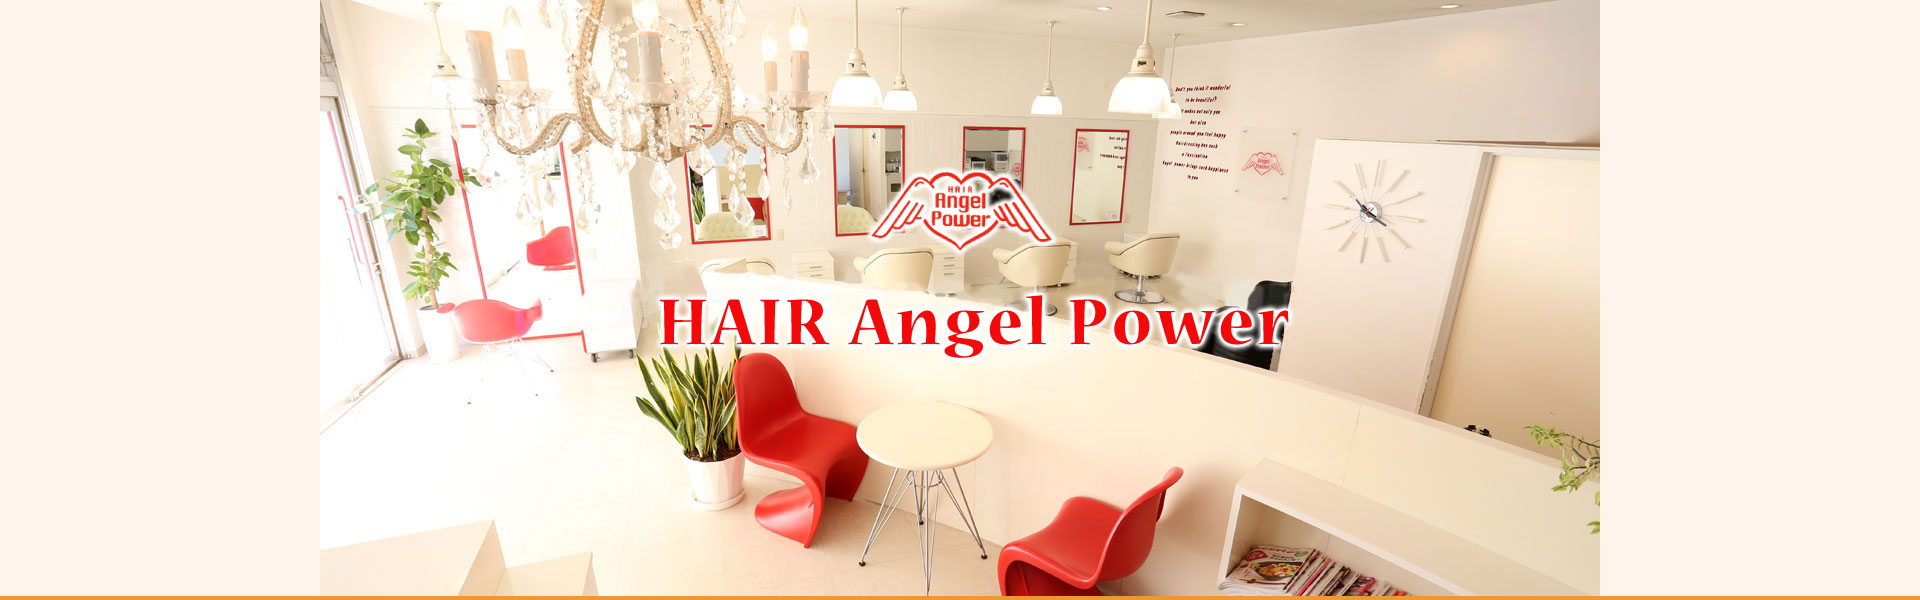 HAIR Angel Power